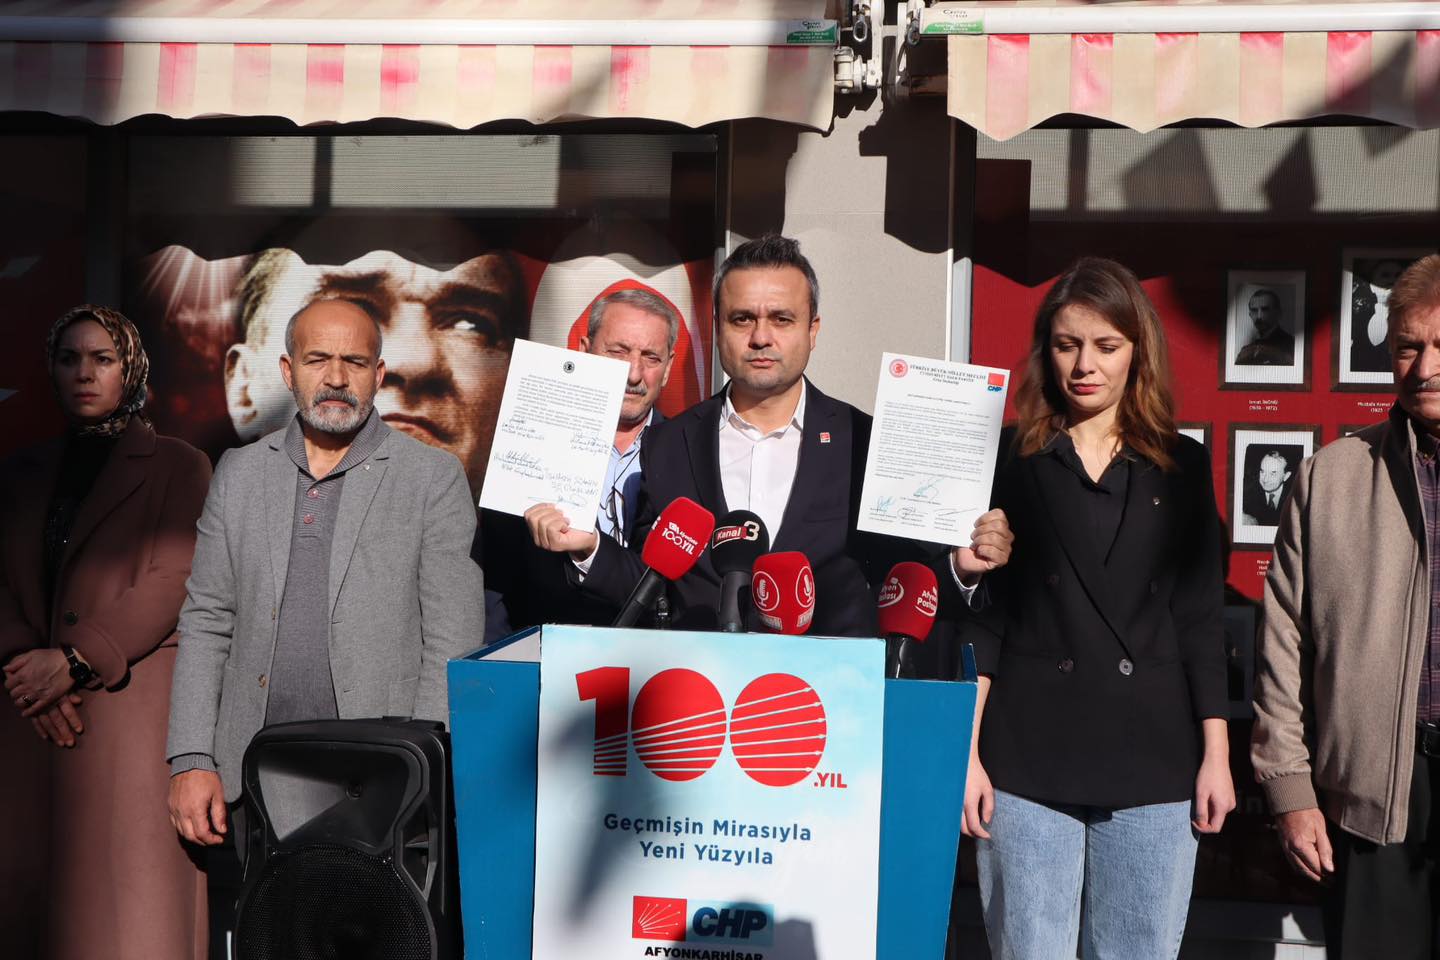 Afyonkarahisar CHP İl Başkanlığı, Son Terör Saldırılarını Kınadı ve Şehit Ailelerine Destek Olacak